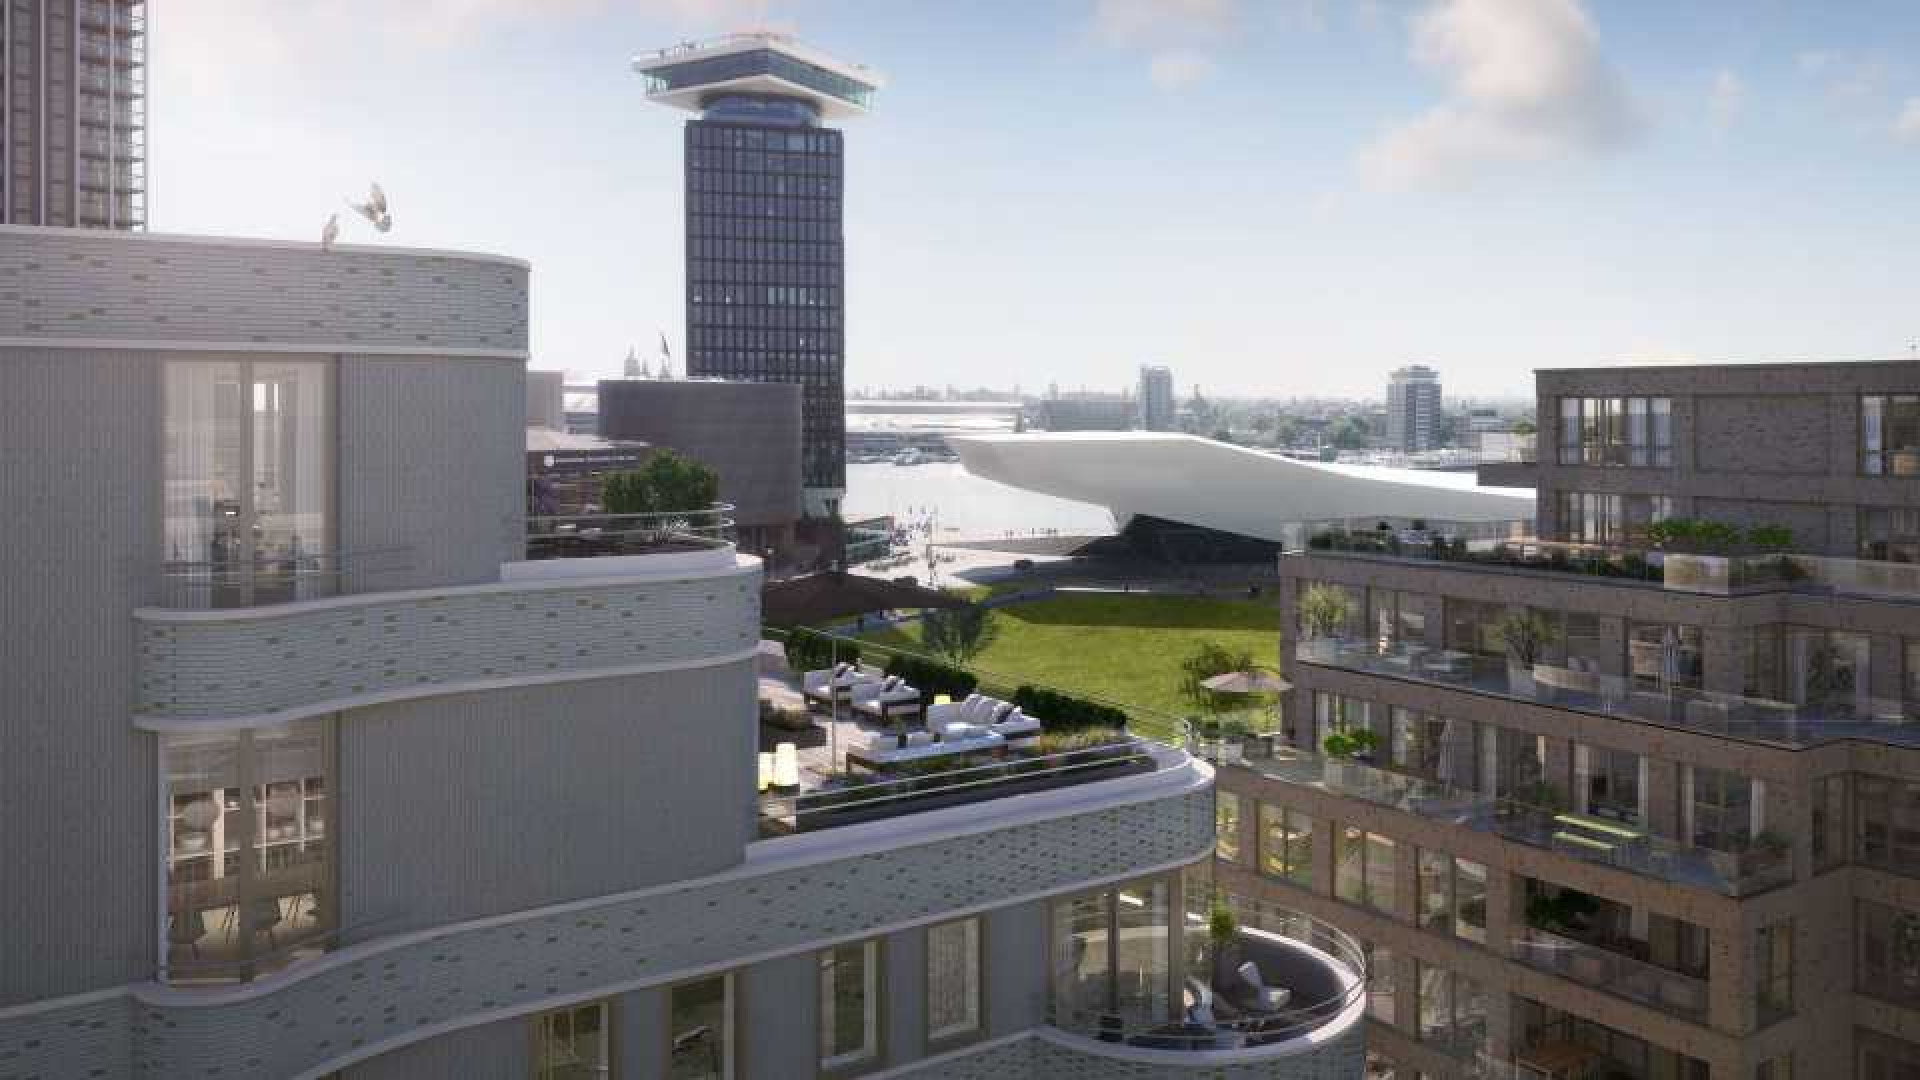 Gordon koopt miljoenen penthouse in Amsterdam. Zie foto's 4